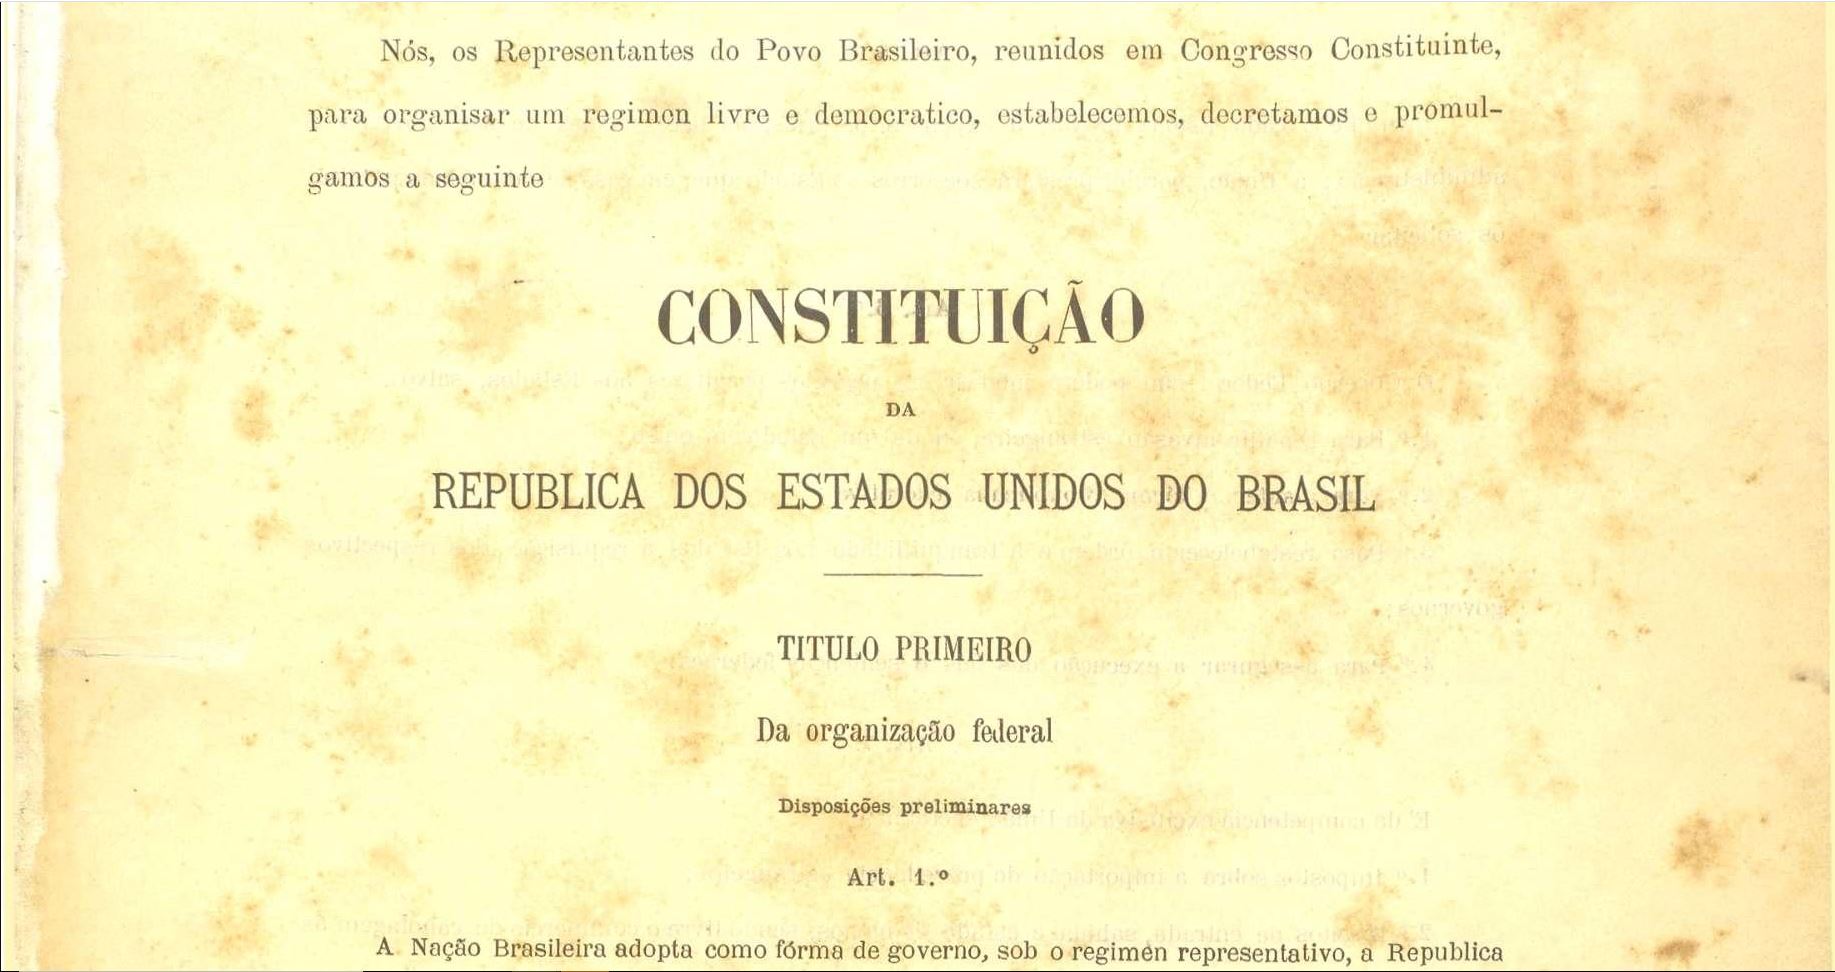 Confira dez curiosidades sobre a Constituição Republicana de 1891